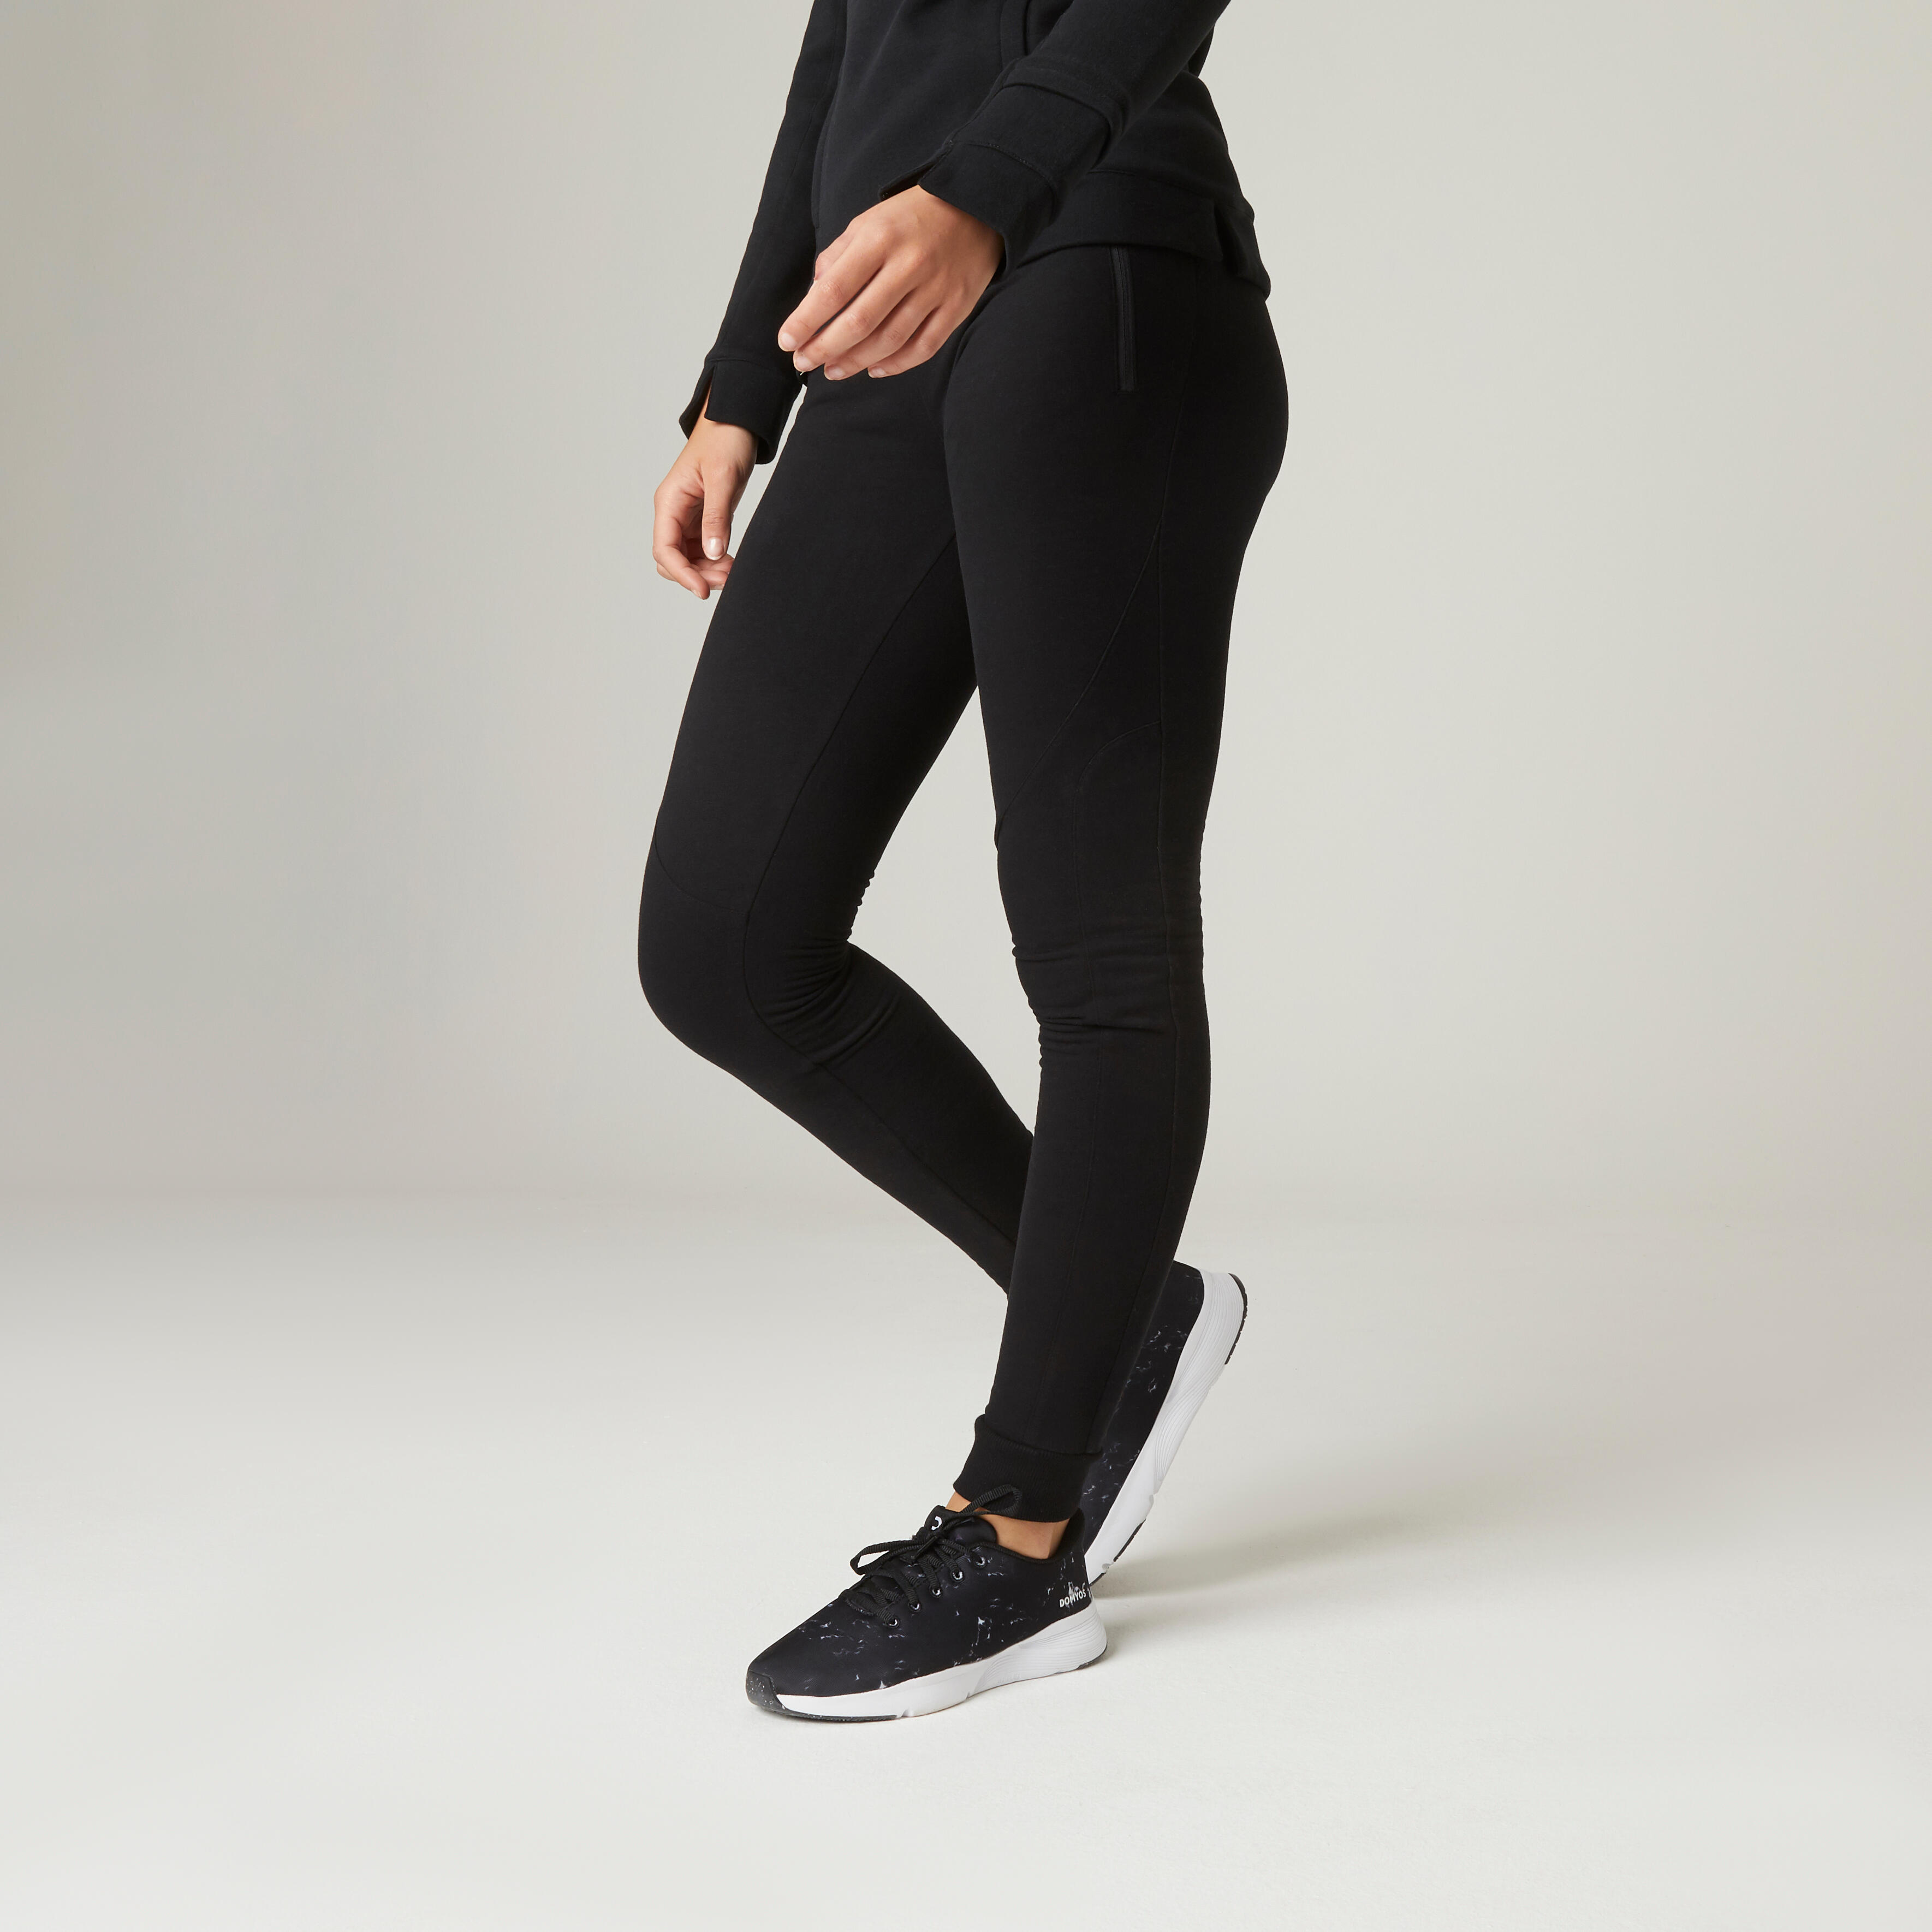 Pantalon de trening 510 fitness călduros cu buzunare cu fermoar negru damă decathlon.ro  Imbracaminte fitness femei